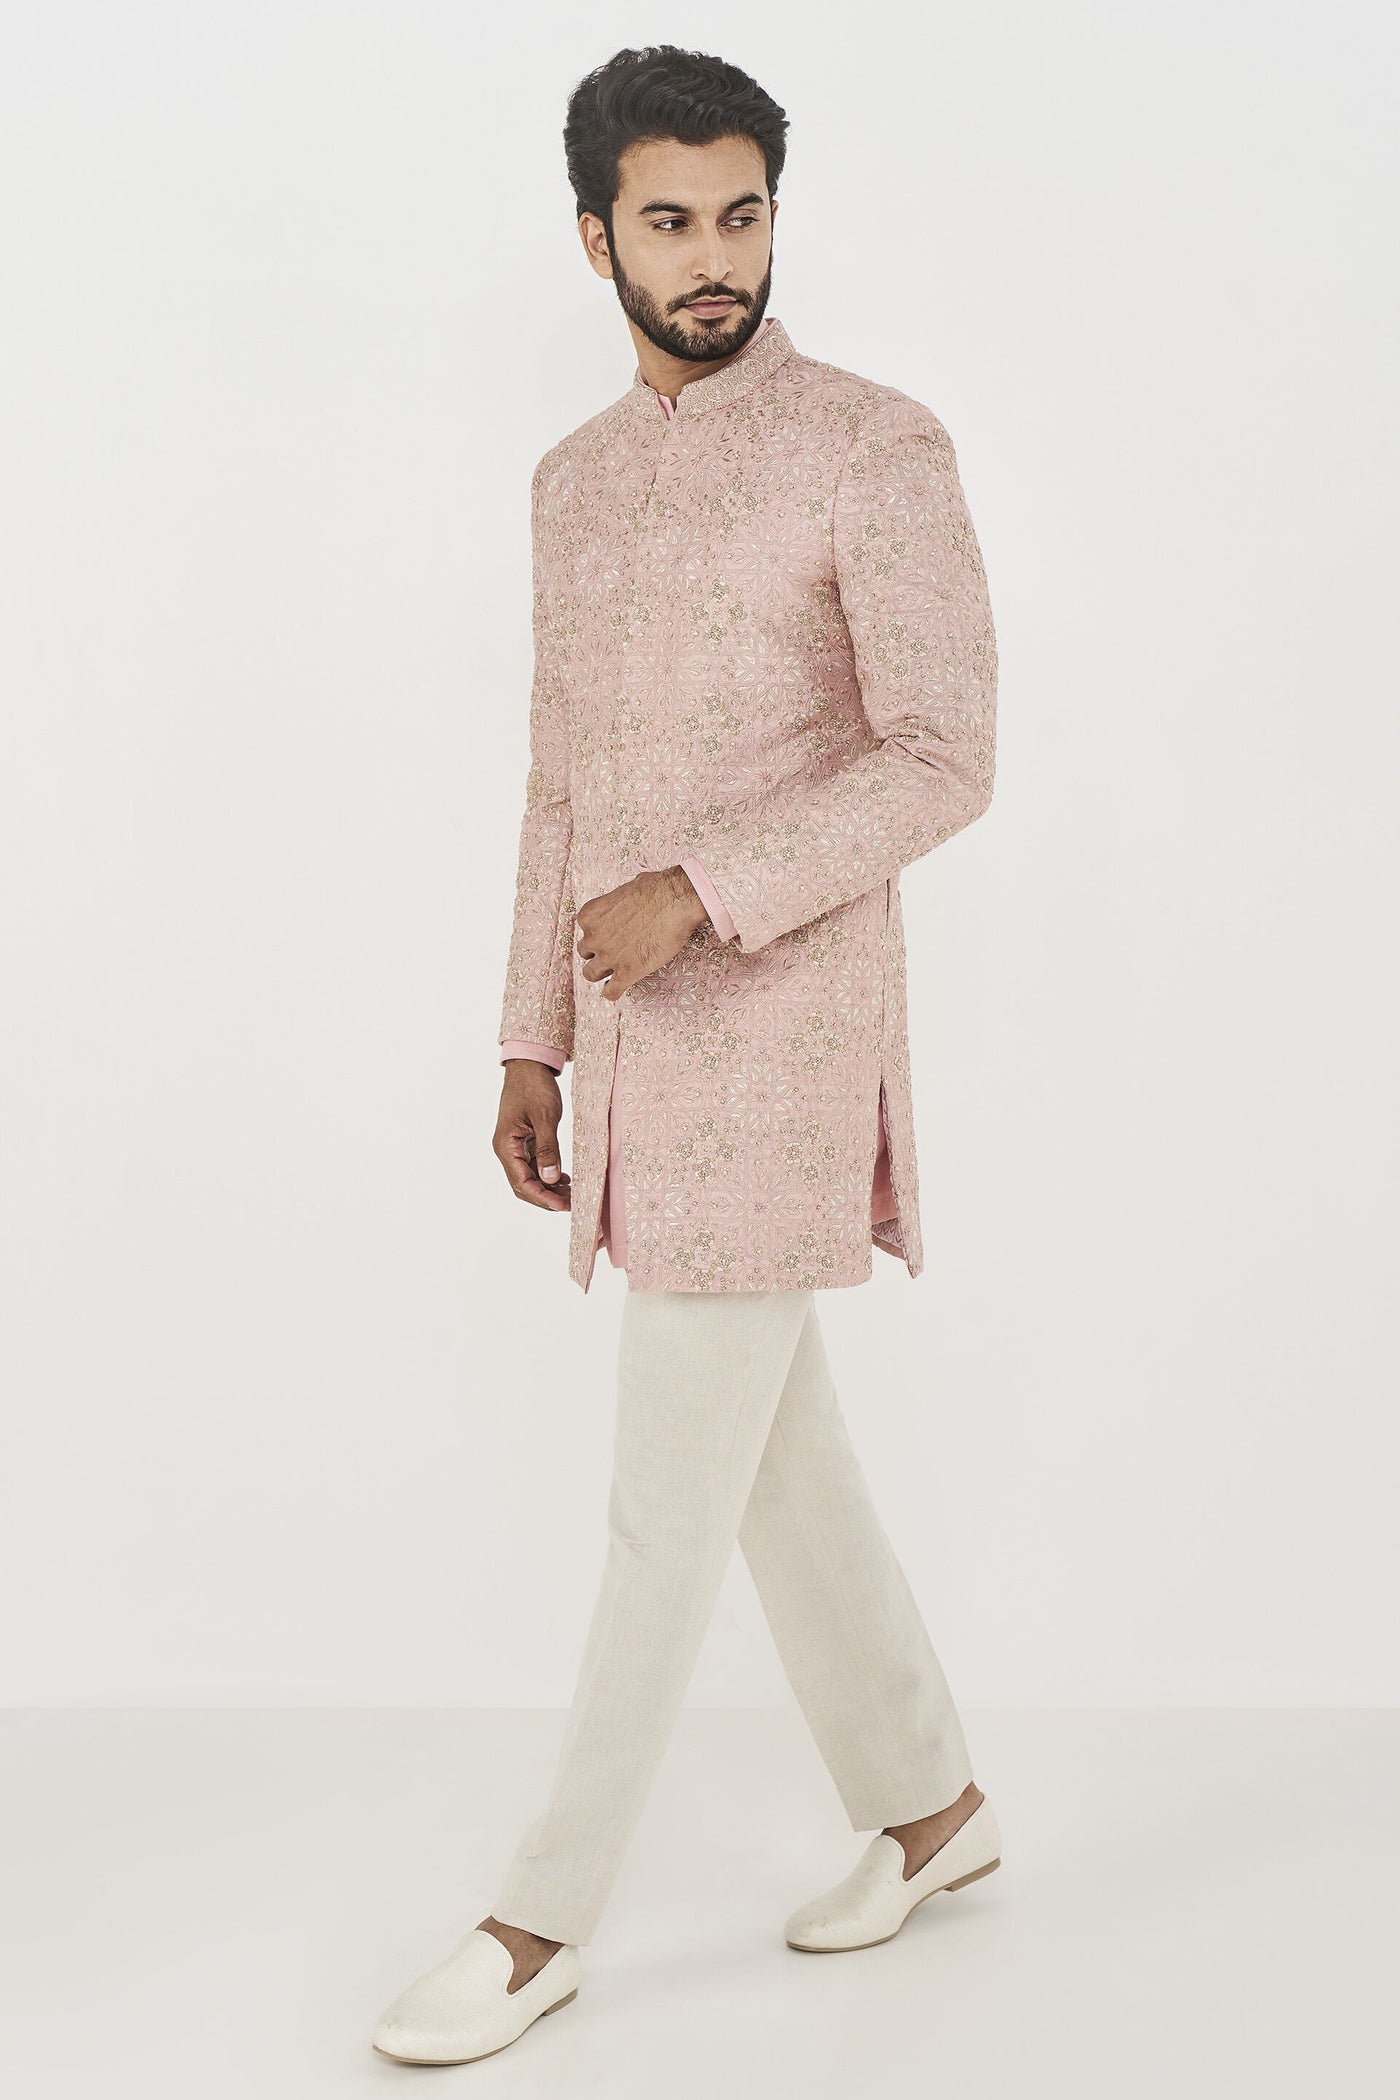 Anita Dongre menswear Anishk Sherwani Pink indian designer wear online shopping melange singapore